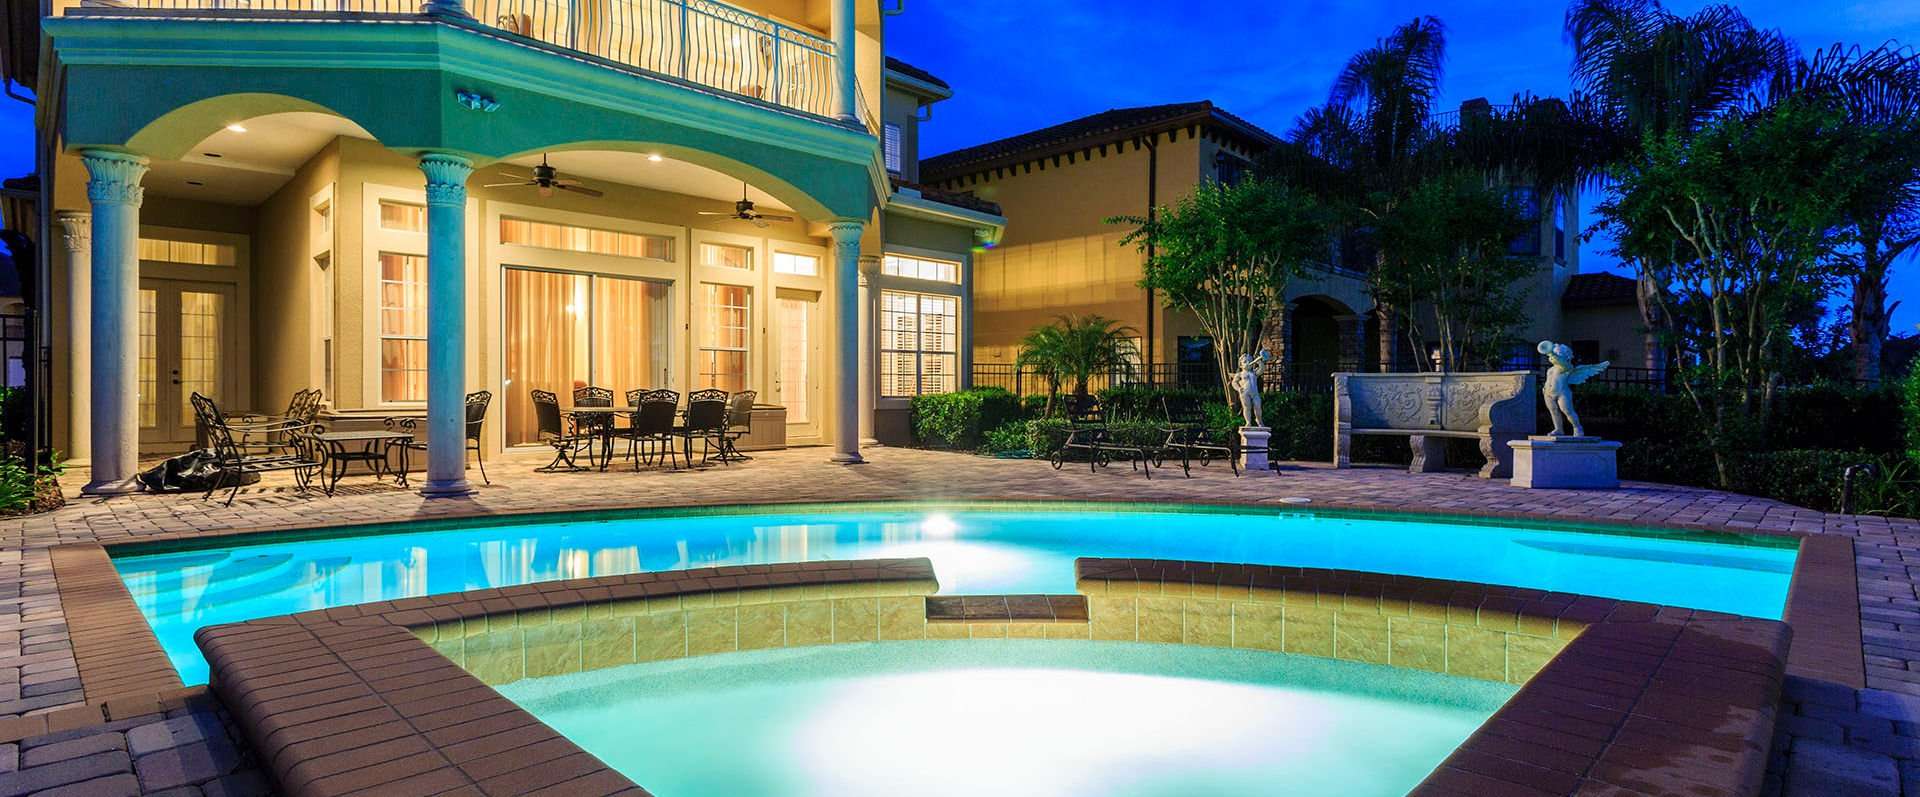 5 Bedroom Pool Rental Vacation Homes